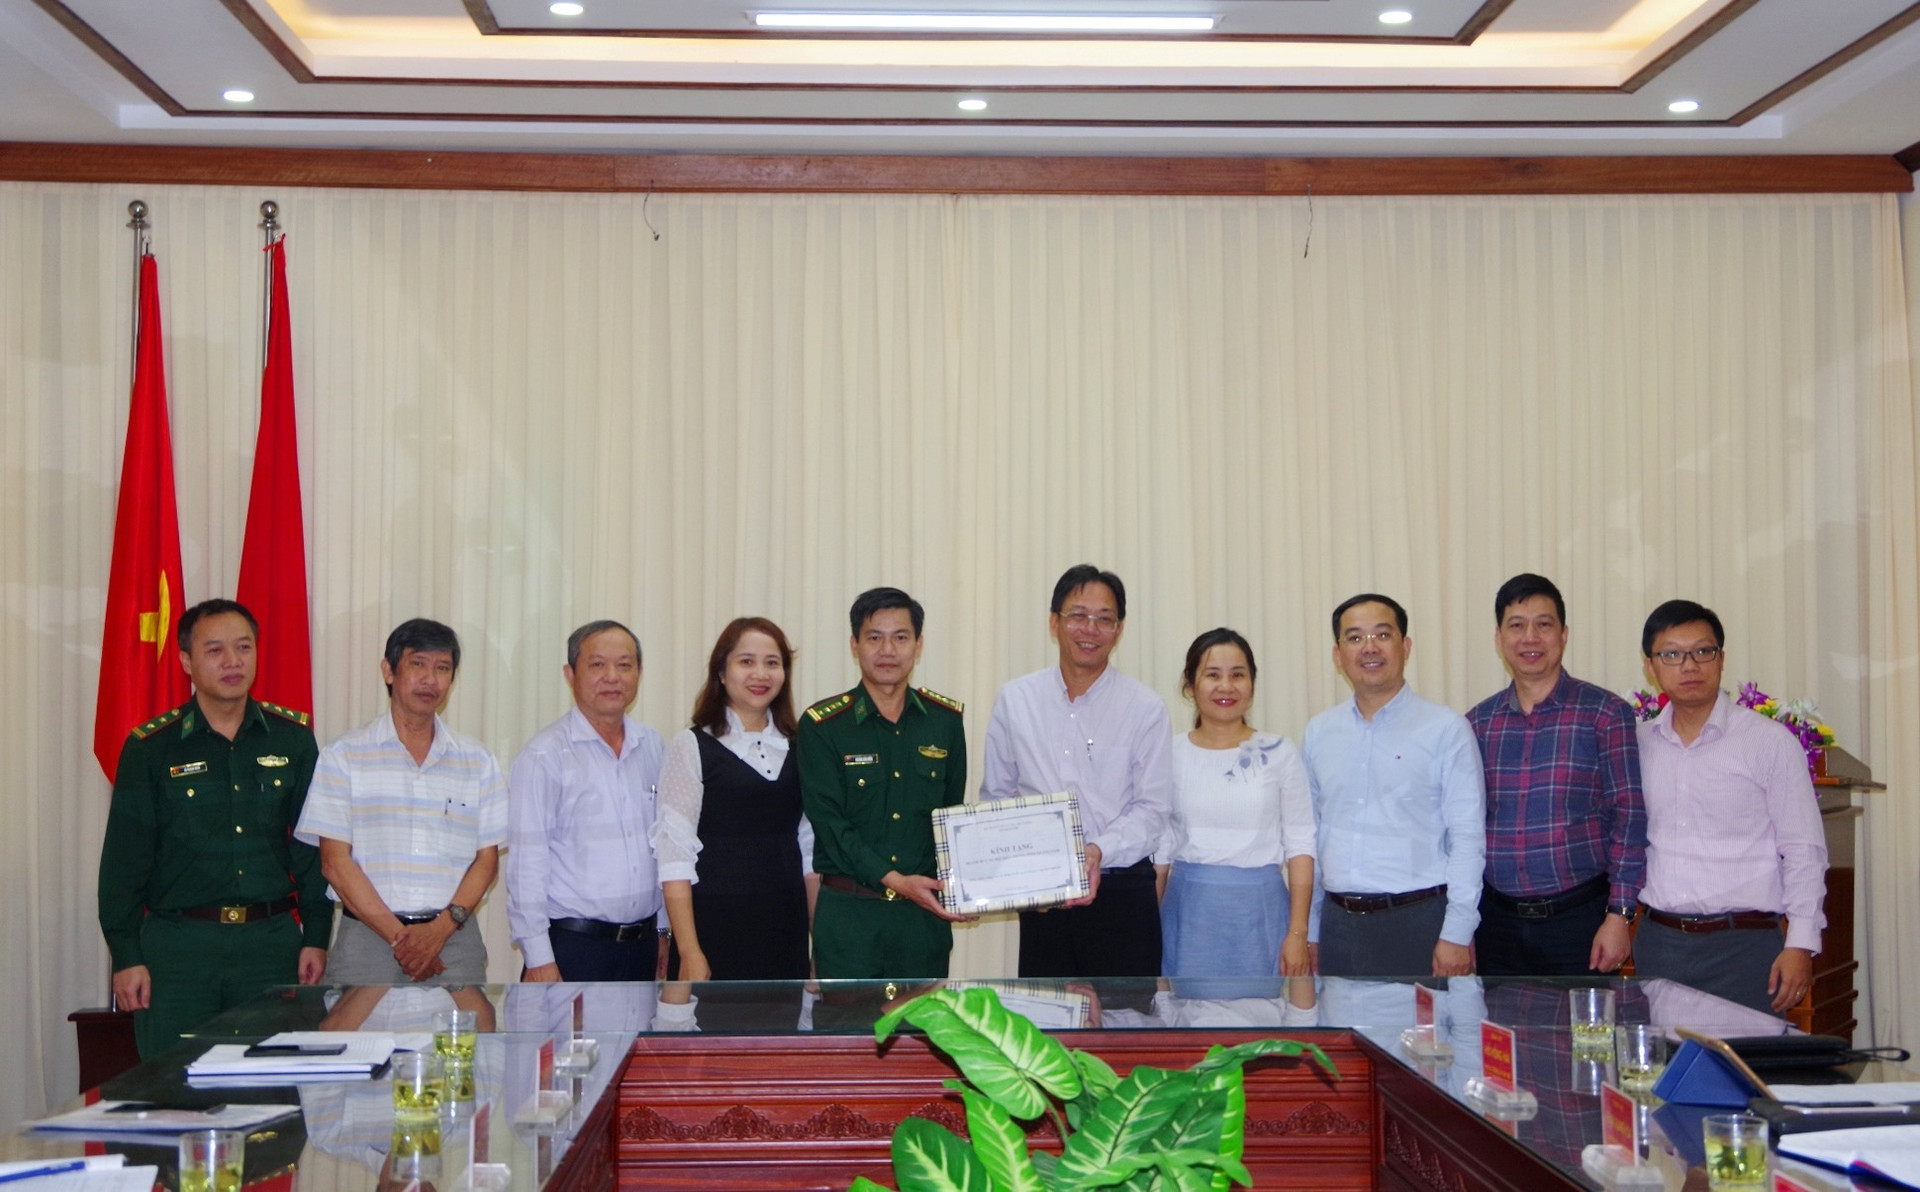 Bộ Thông tin và Truyền thông tặng xuất bản phẩm, CD, tờ gấp tuyên truyền pháp luật cho BĐBP tỉnh và các xã có đường biên giới giáp Lào của tỉnh Quảng Nam.